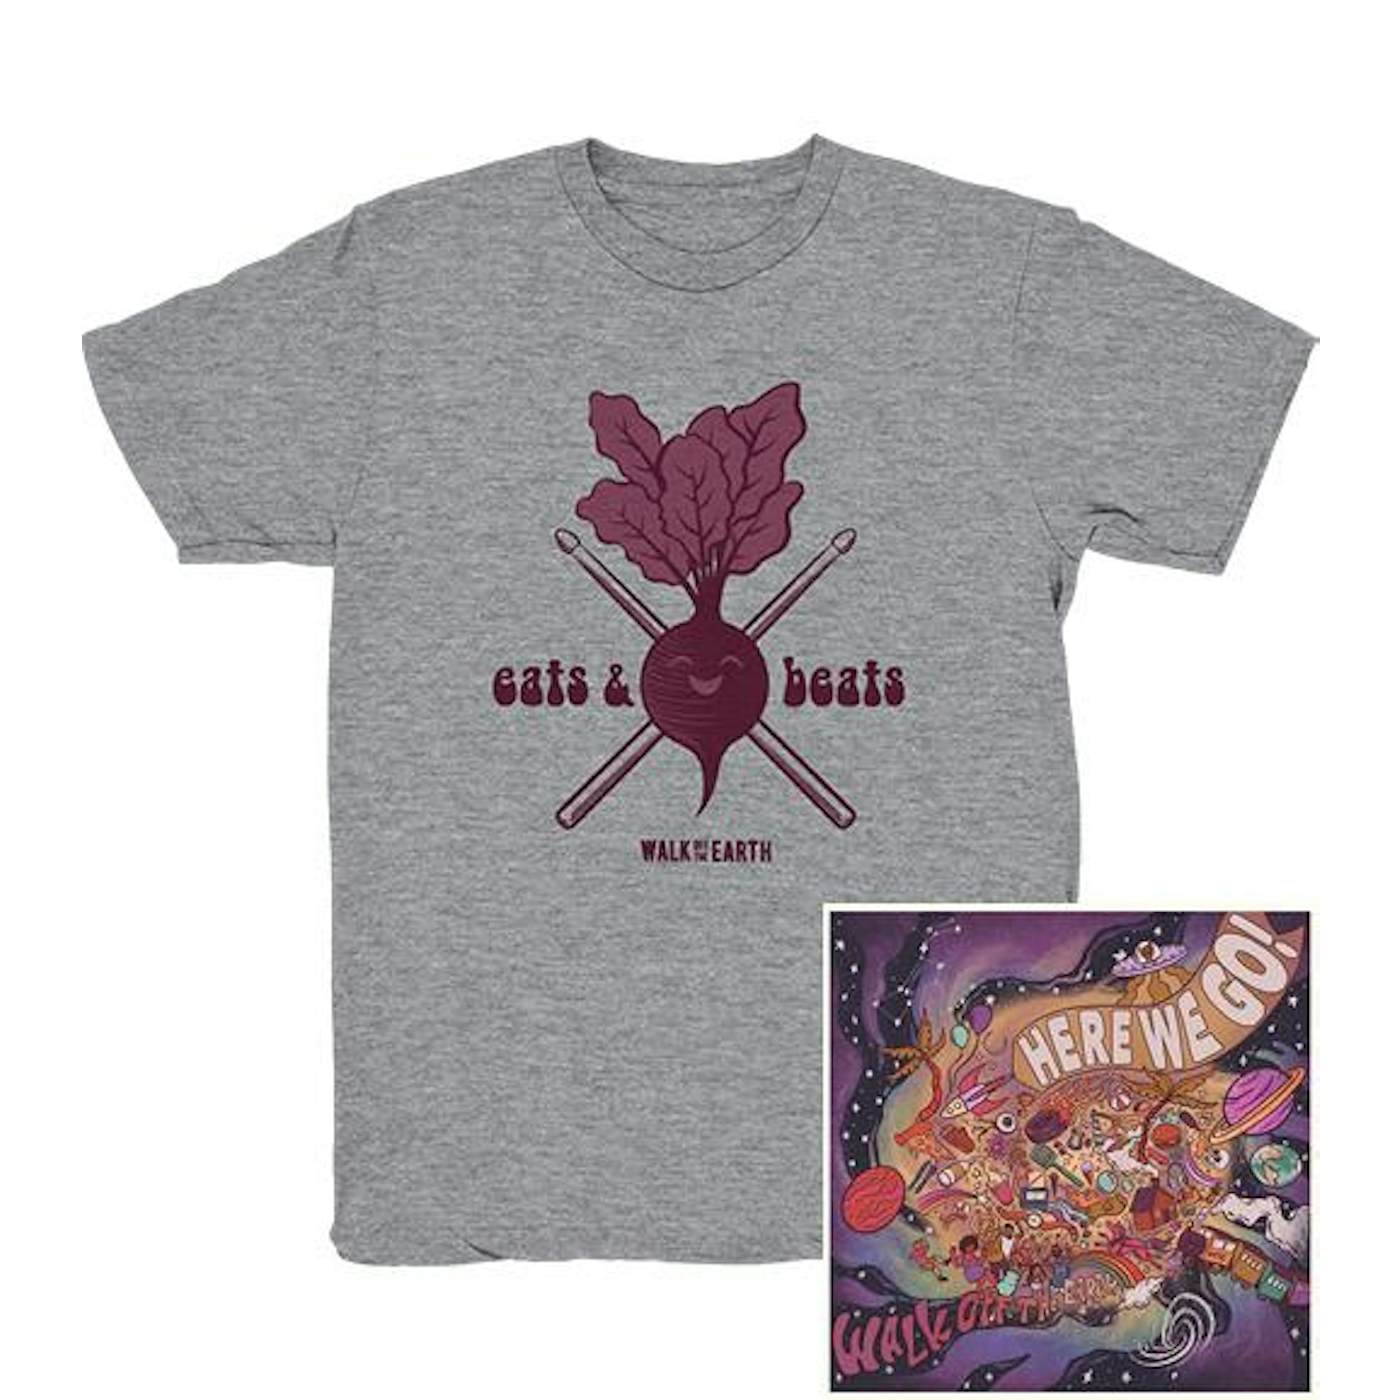 Walk Off the Earth Eats & Beats T-Shirt + Digital Download